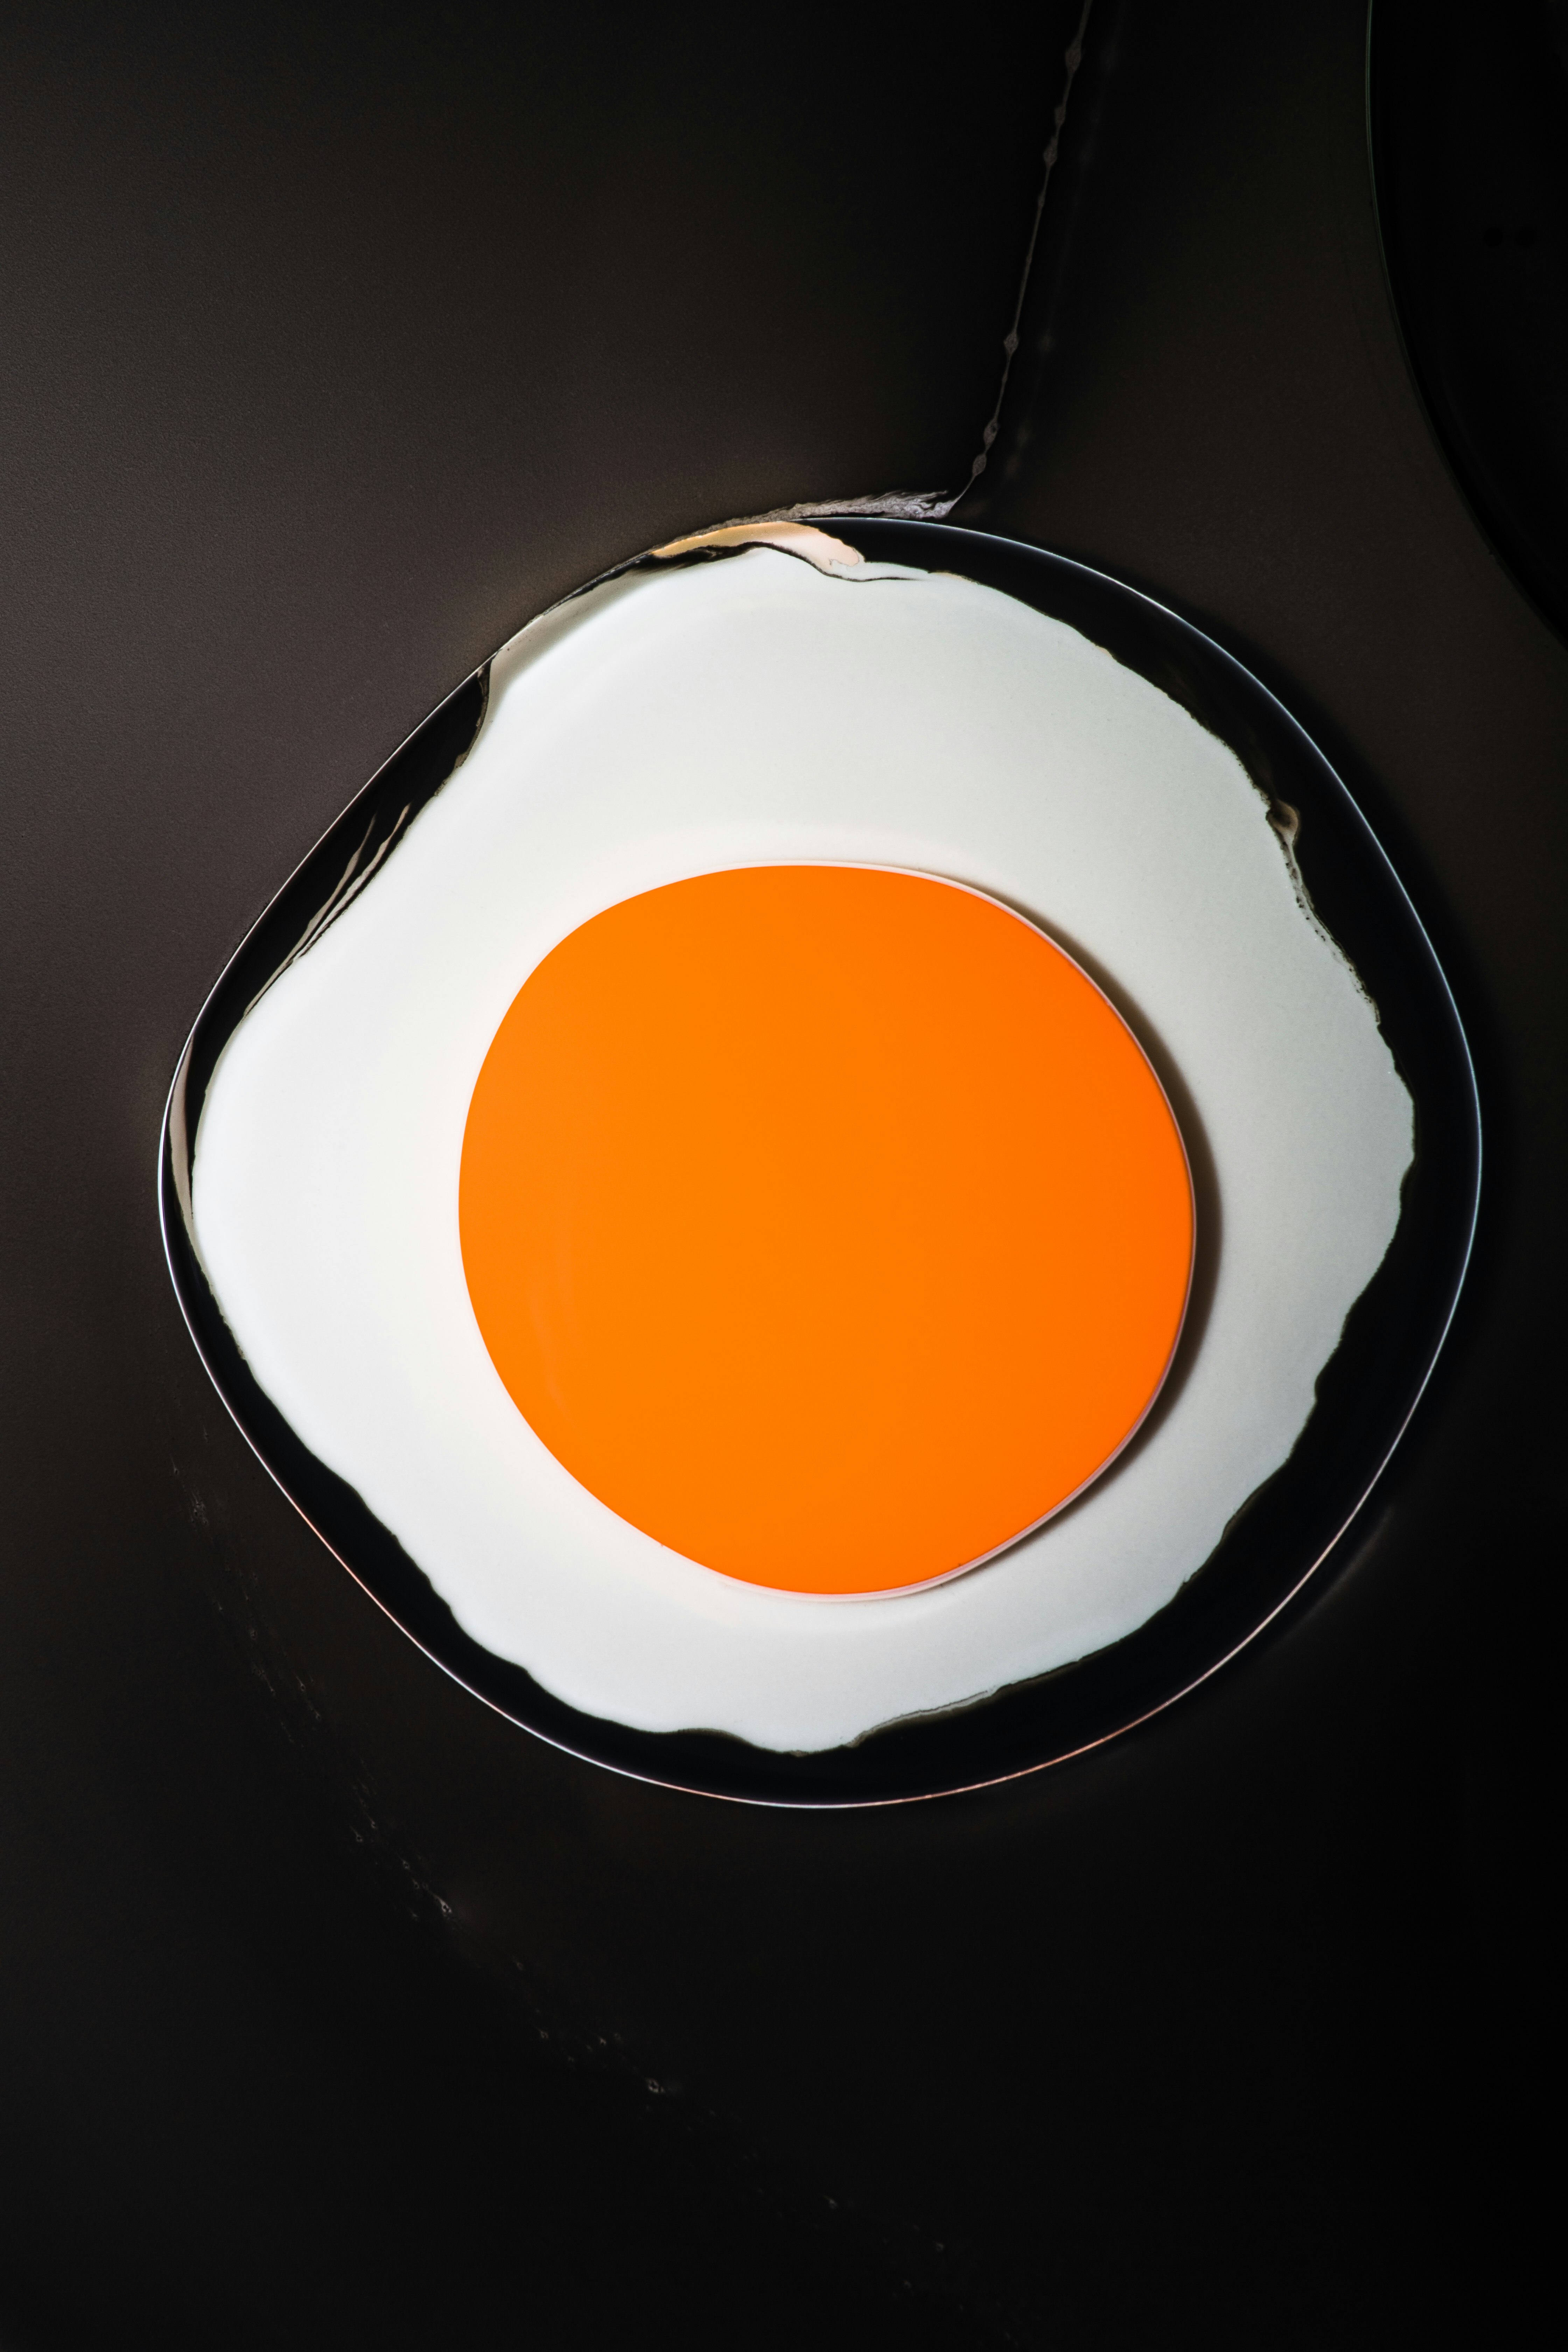 white and orange round plate